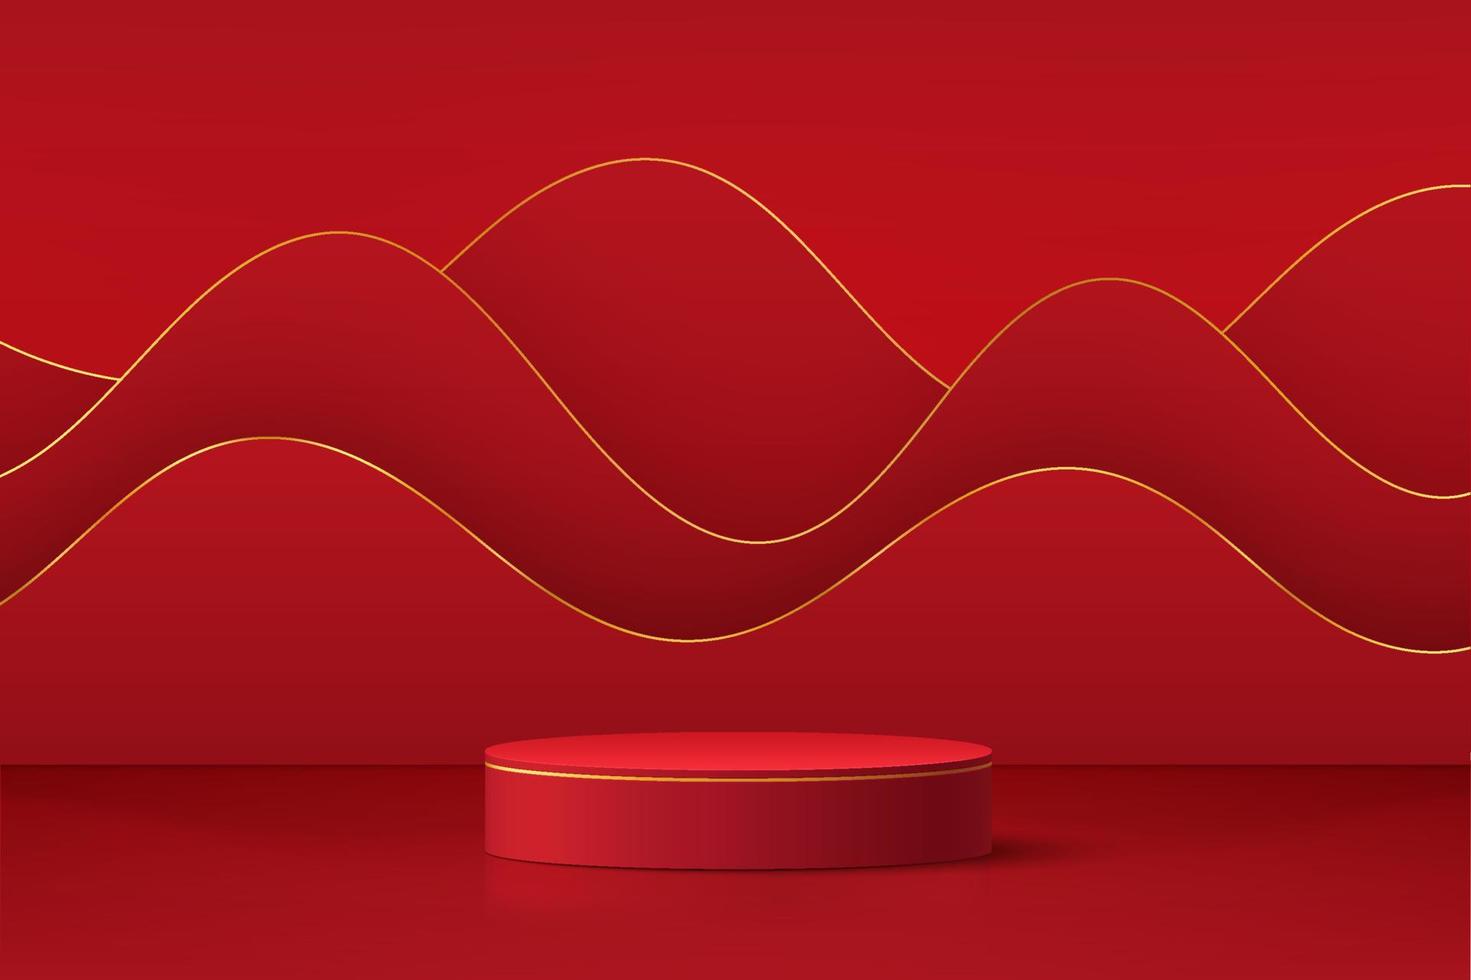 Podio de pedestal de cilindro 3d rojo realista con capas de fondo de forma ondulada. Escena mínima para escaparate de productos, exhibición de promoción. Diseño de plataforma de sala de estudio abstracto. concepto de feliz día de la linterna. vector